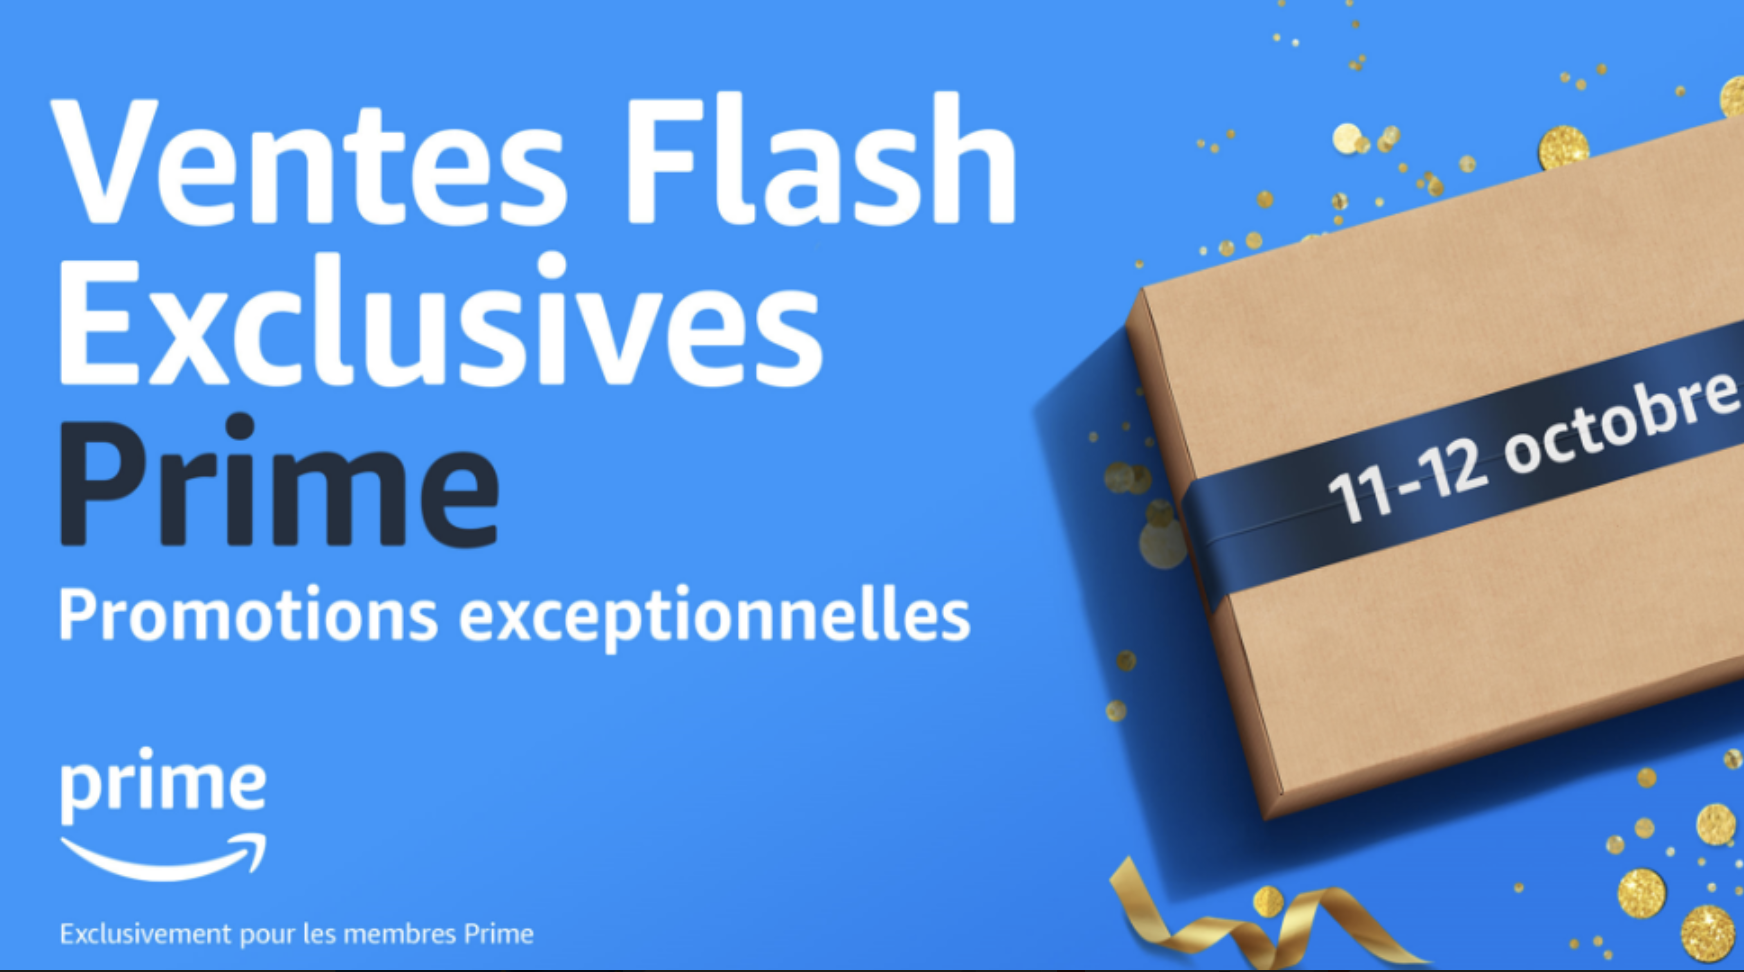 Amazon kondigt in oktober een nieuw “Flash”-evenement aan voor Prime-abonnees